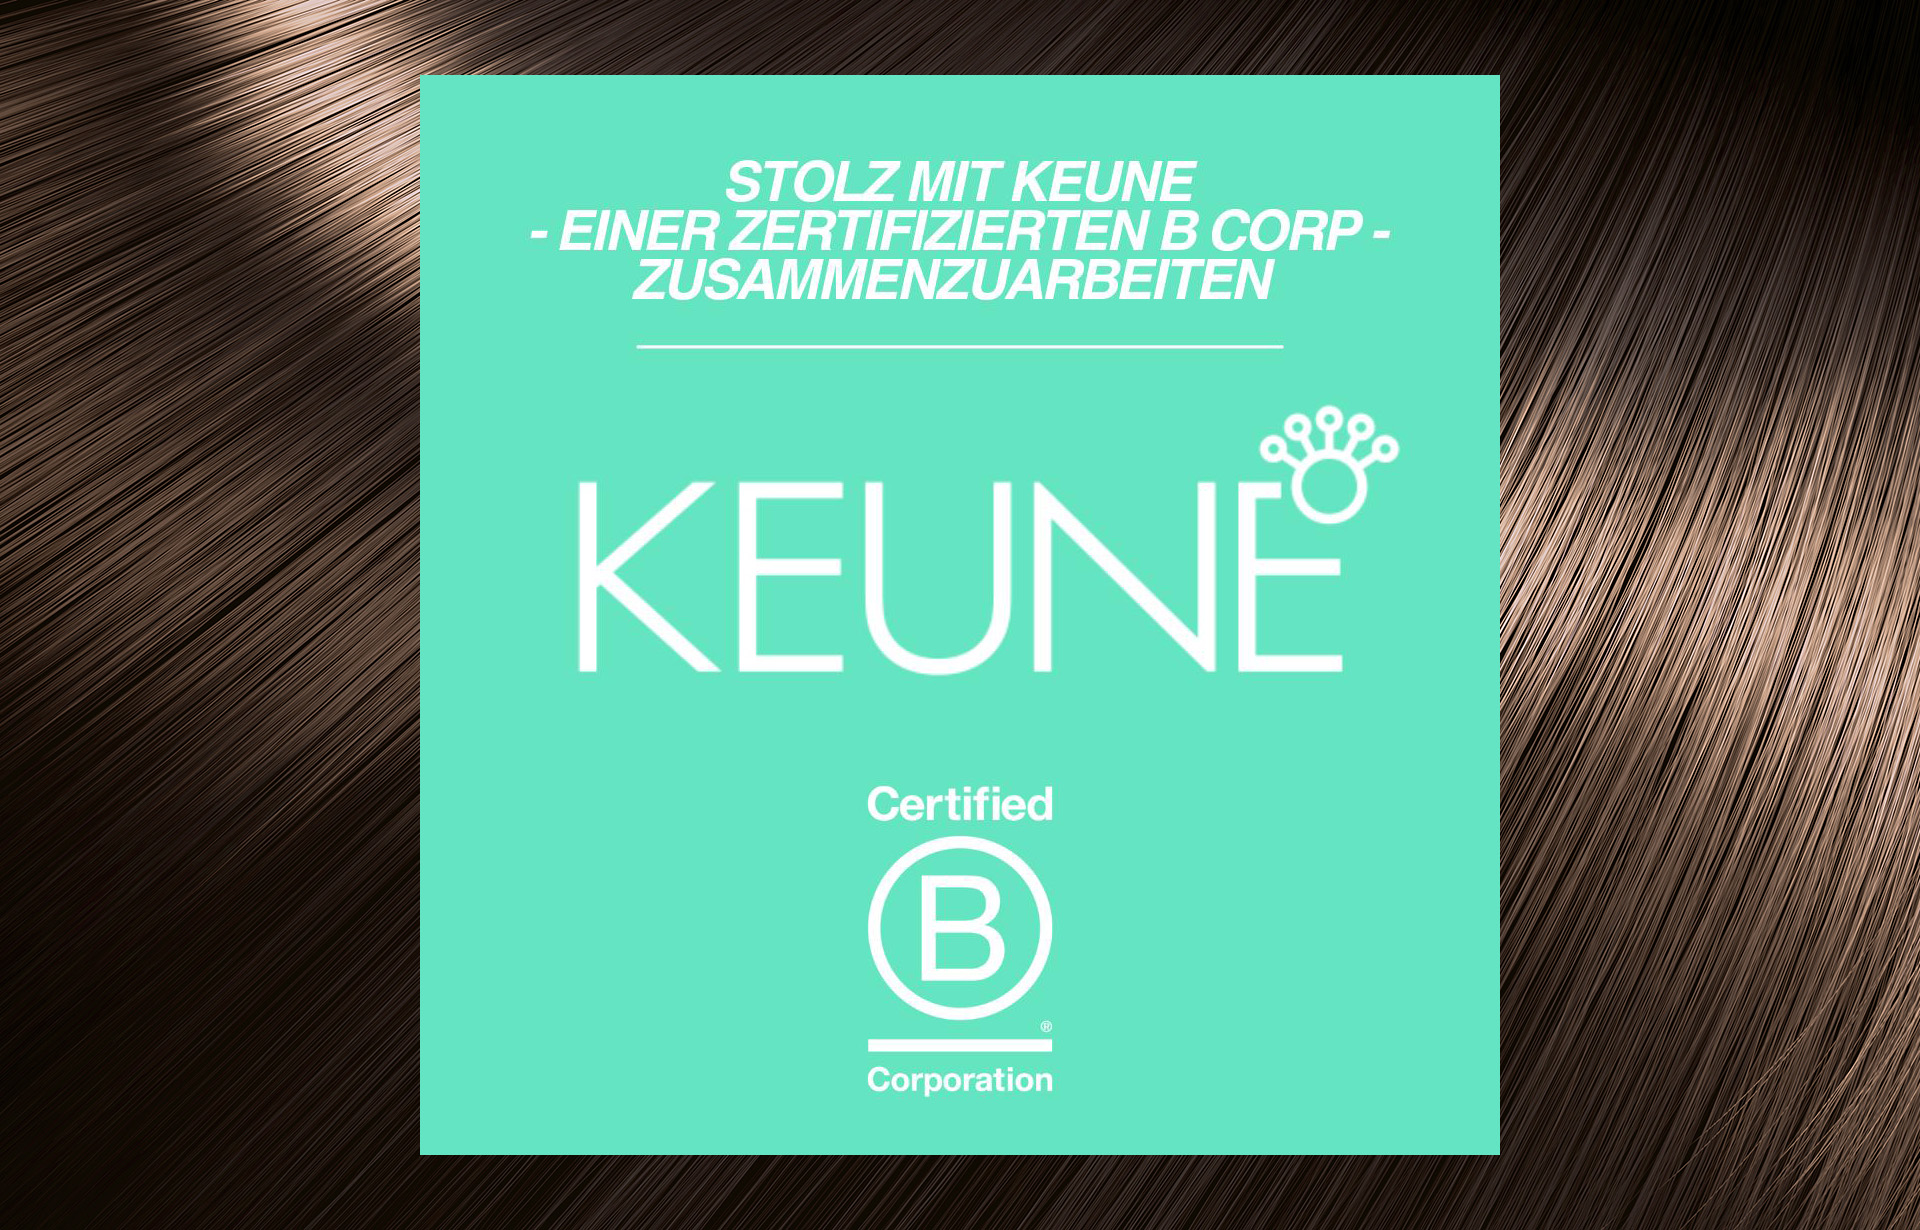 Keune Corp B